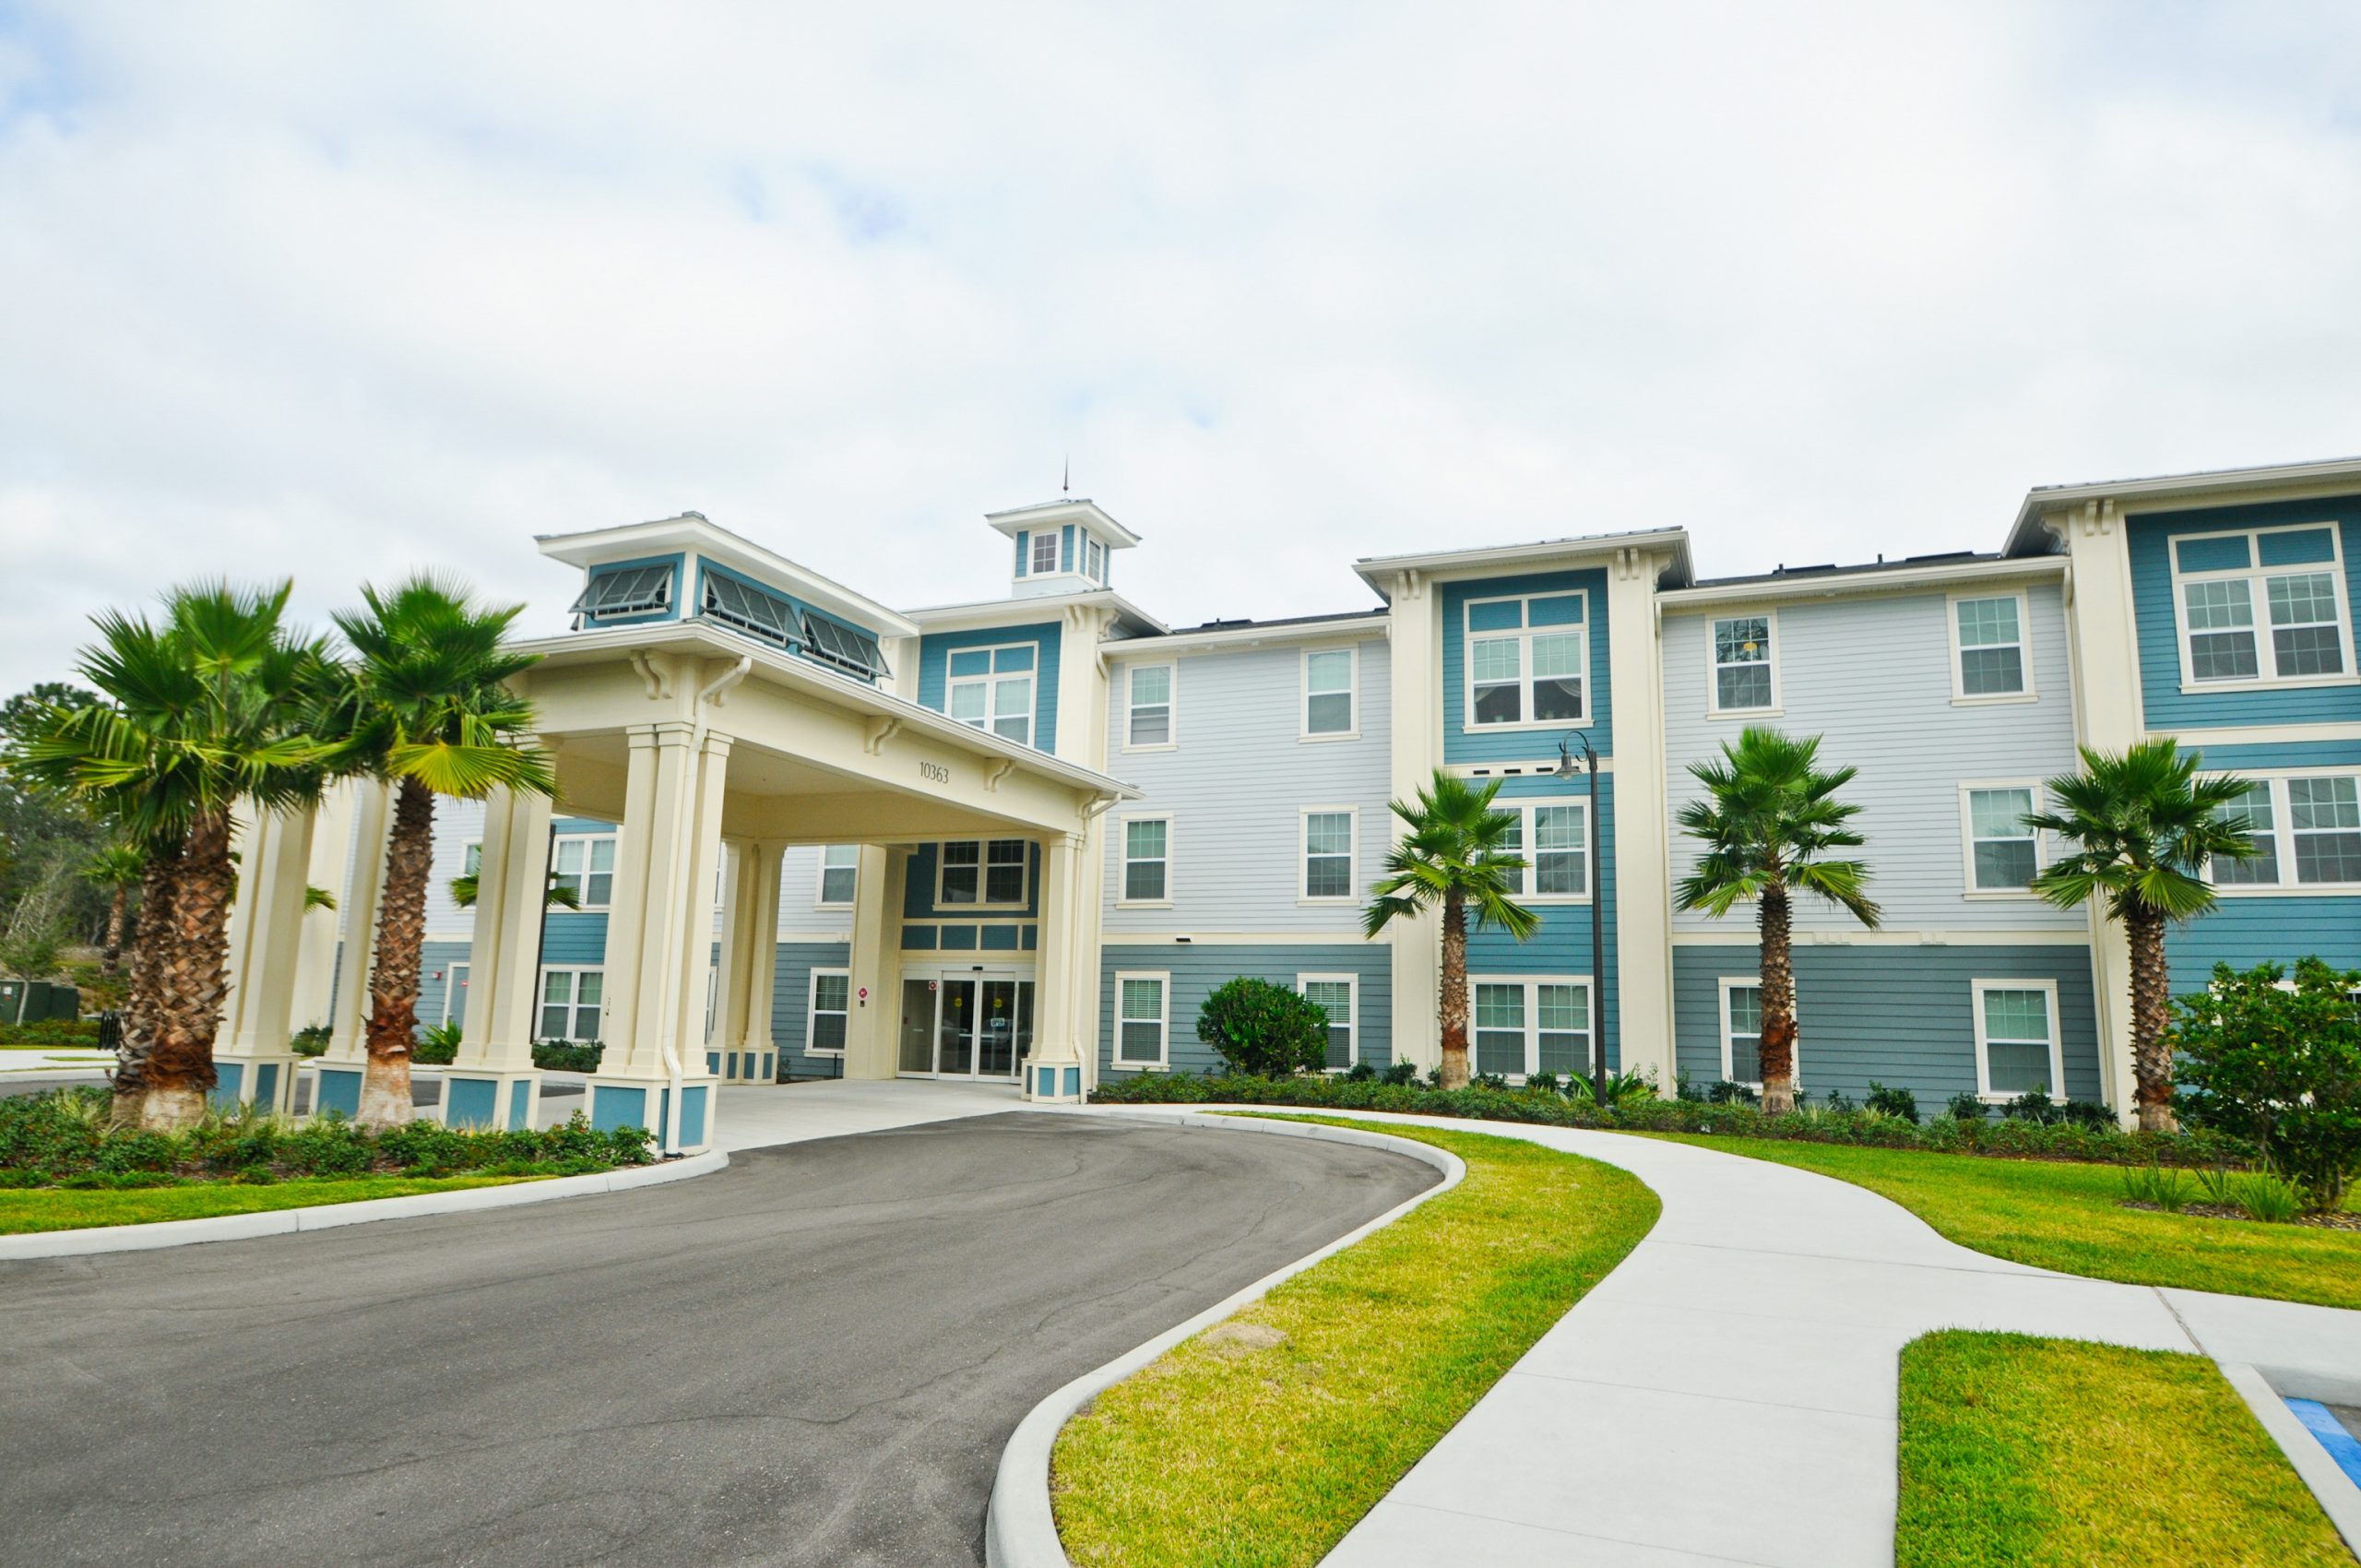 Senior living facility entrance in florida